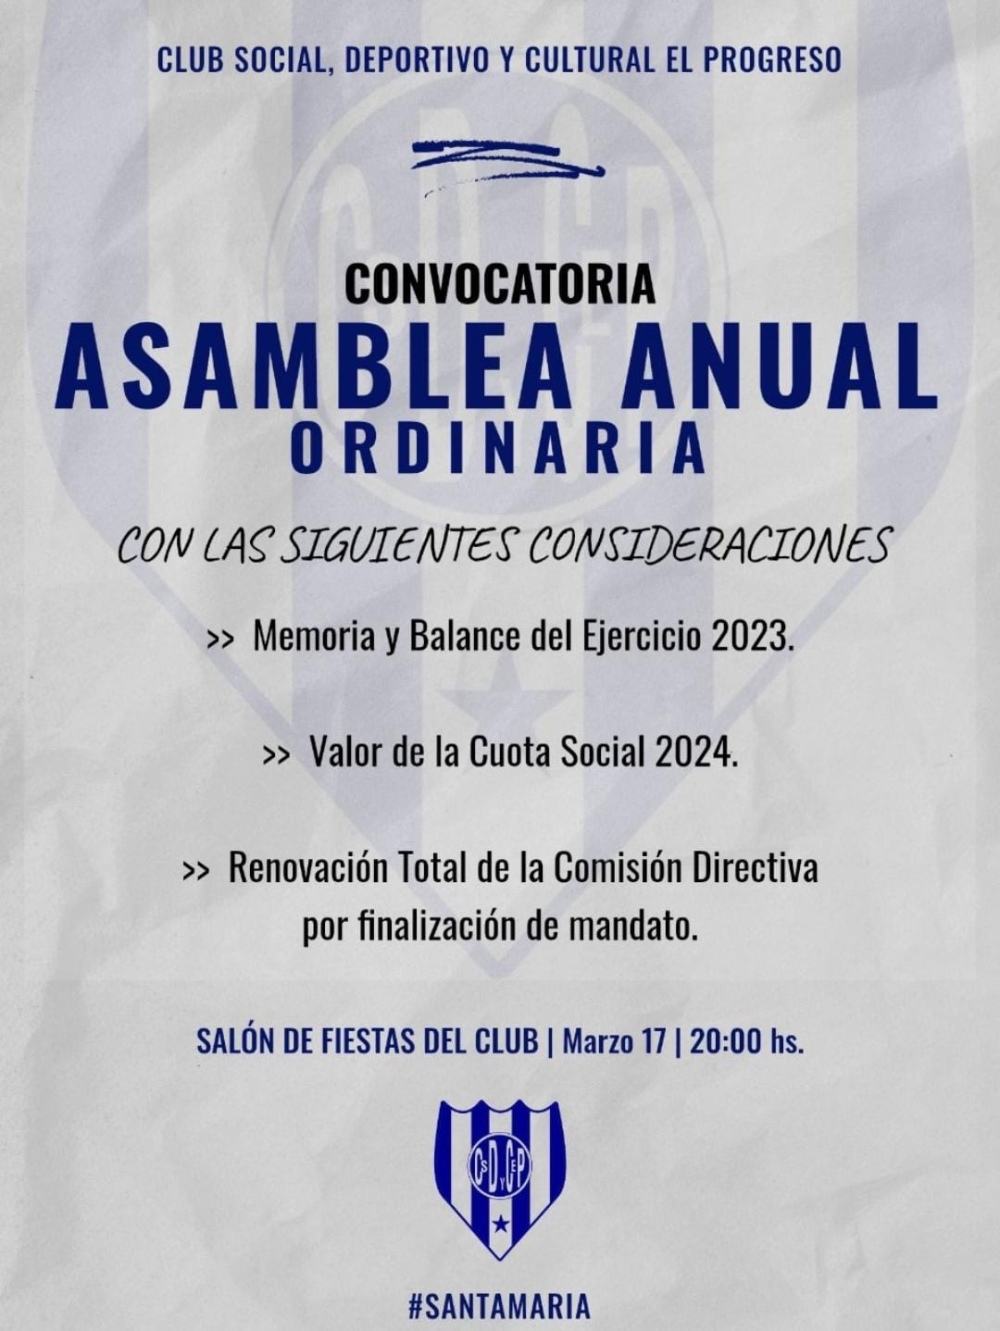 El domingo, Asamblea General Ordinaria de Club El Progreso de Santa María